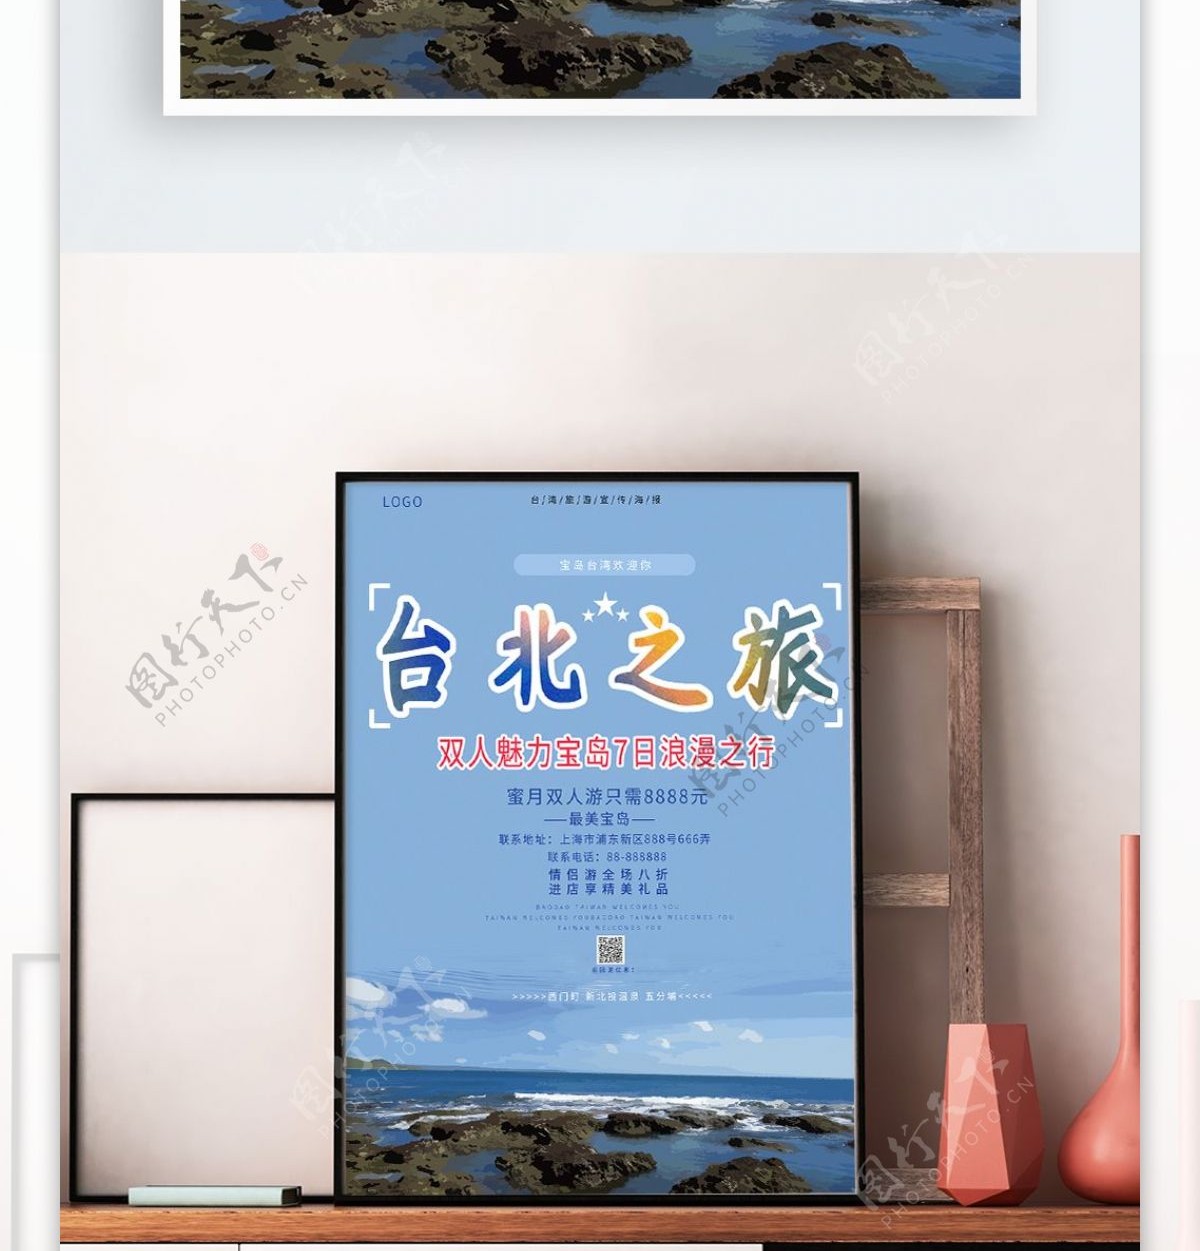 蓝色简约风台湾旅游宣传海报模板设计